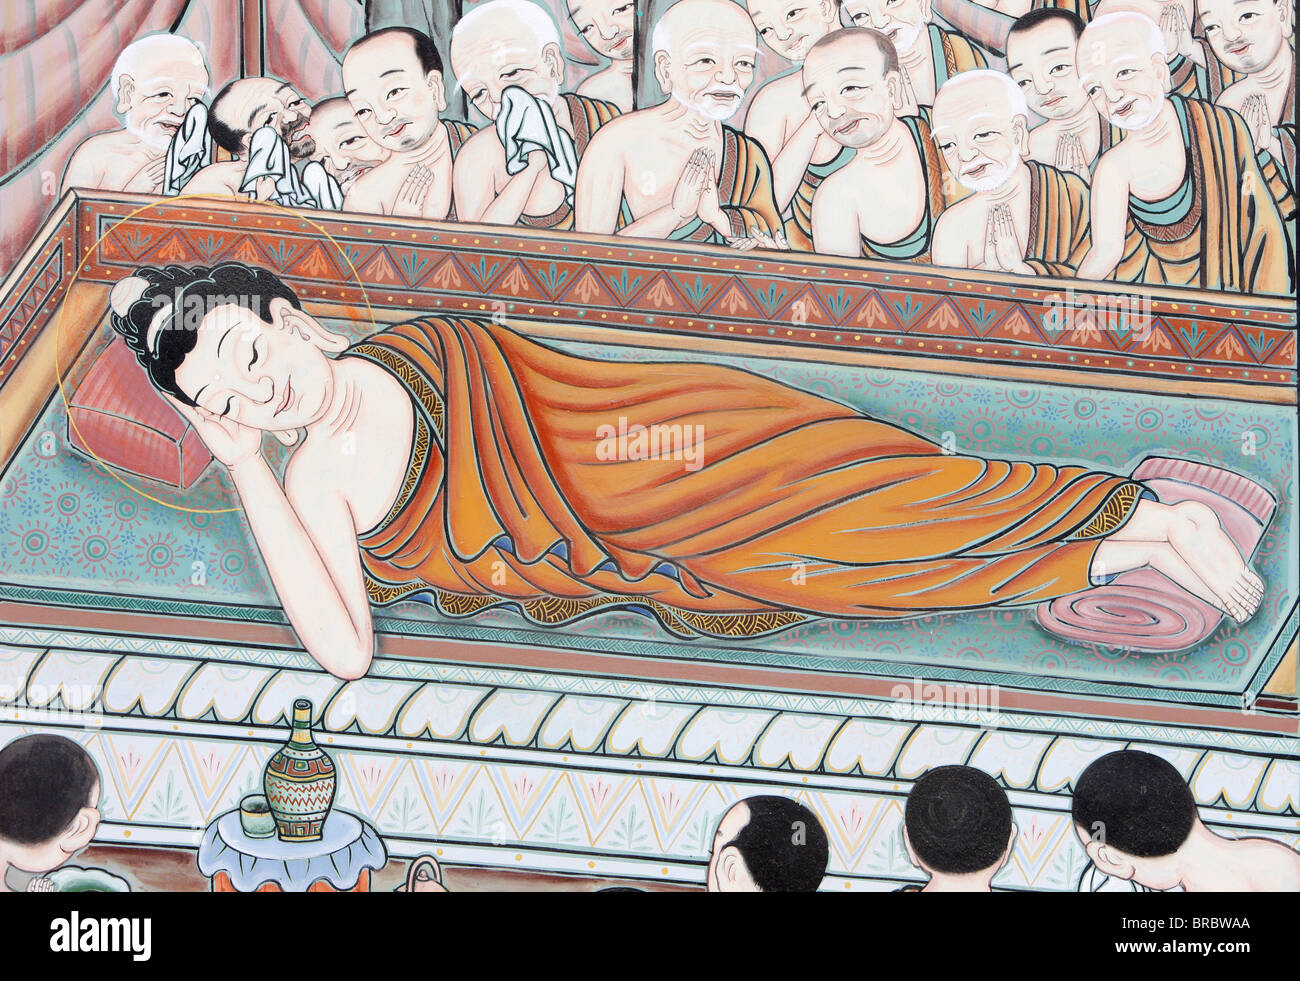 Nach 45 Jahren den Dharma zu lehren übergebene Buddha Parinirvana, Szene aus dem Leben des Buddha, Seoul, Südkorea Stockfoto